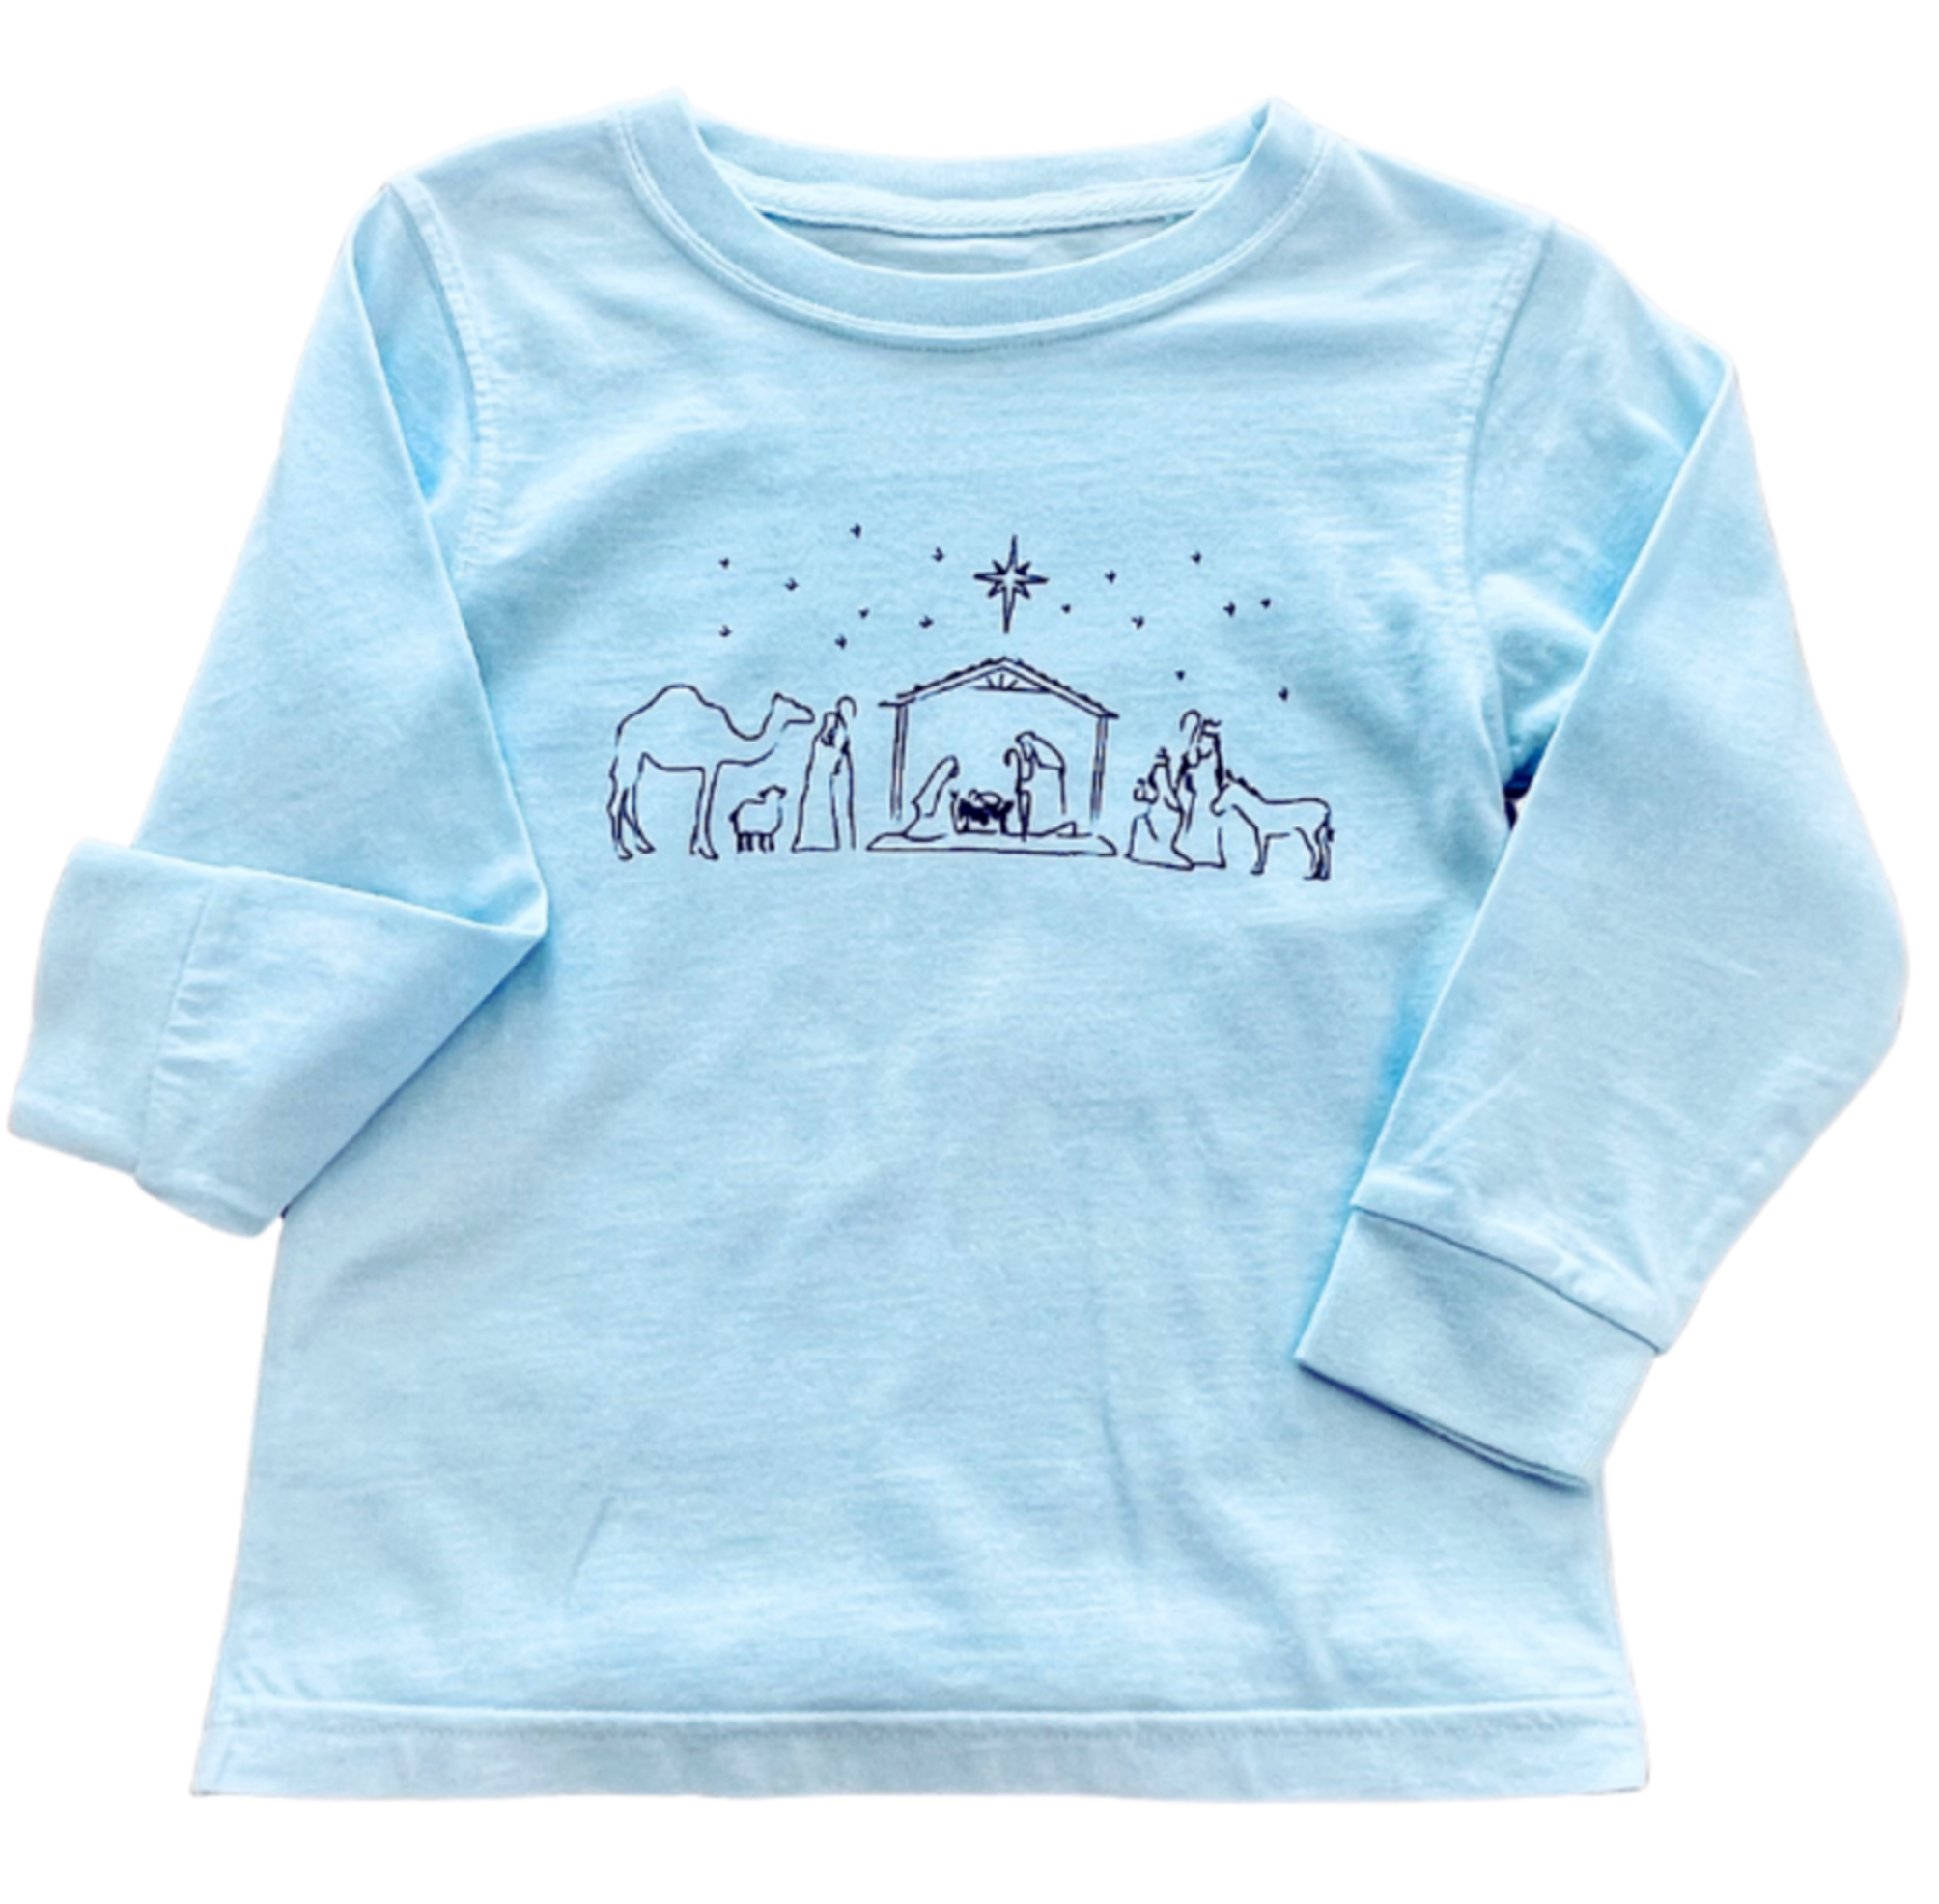 T-shirt Jesus - Azul bebê - Comprar em D'NATI BOUTIQUE